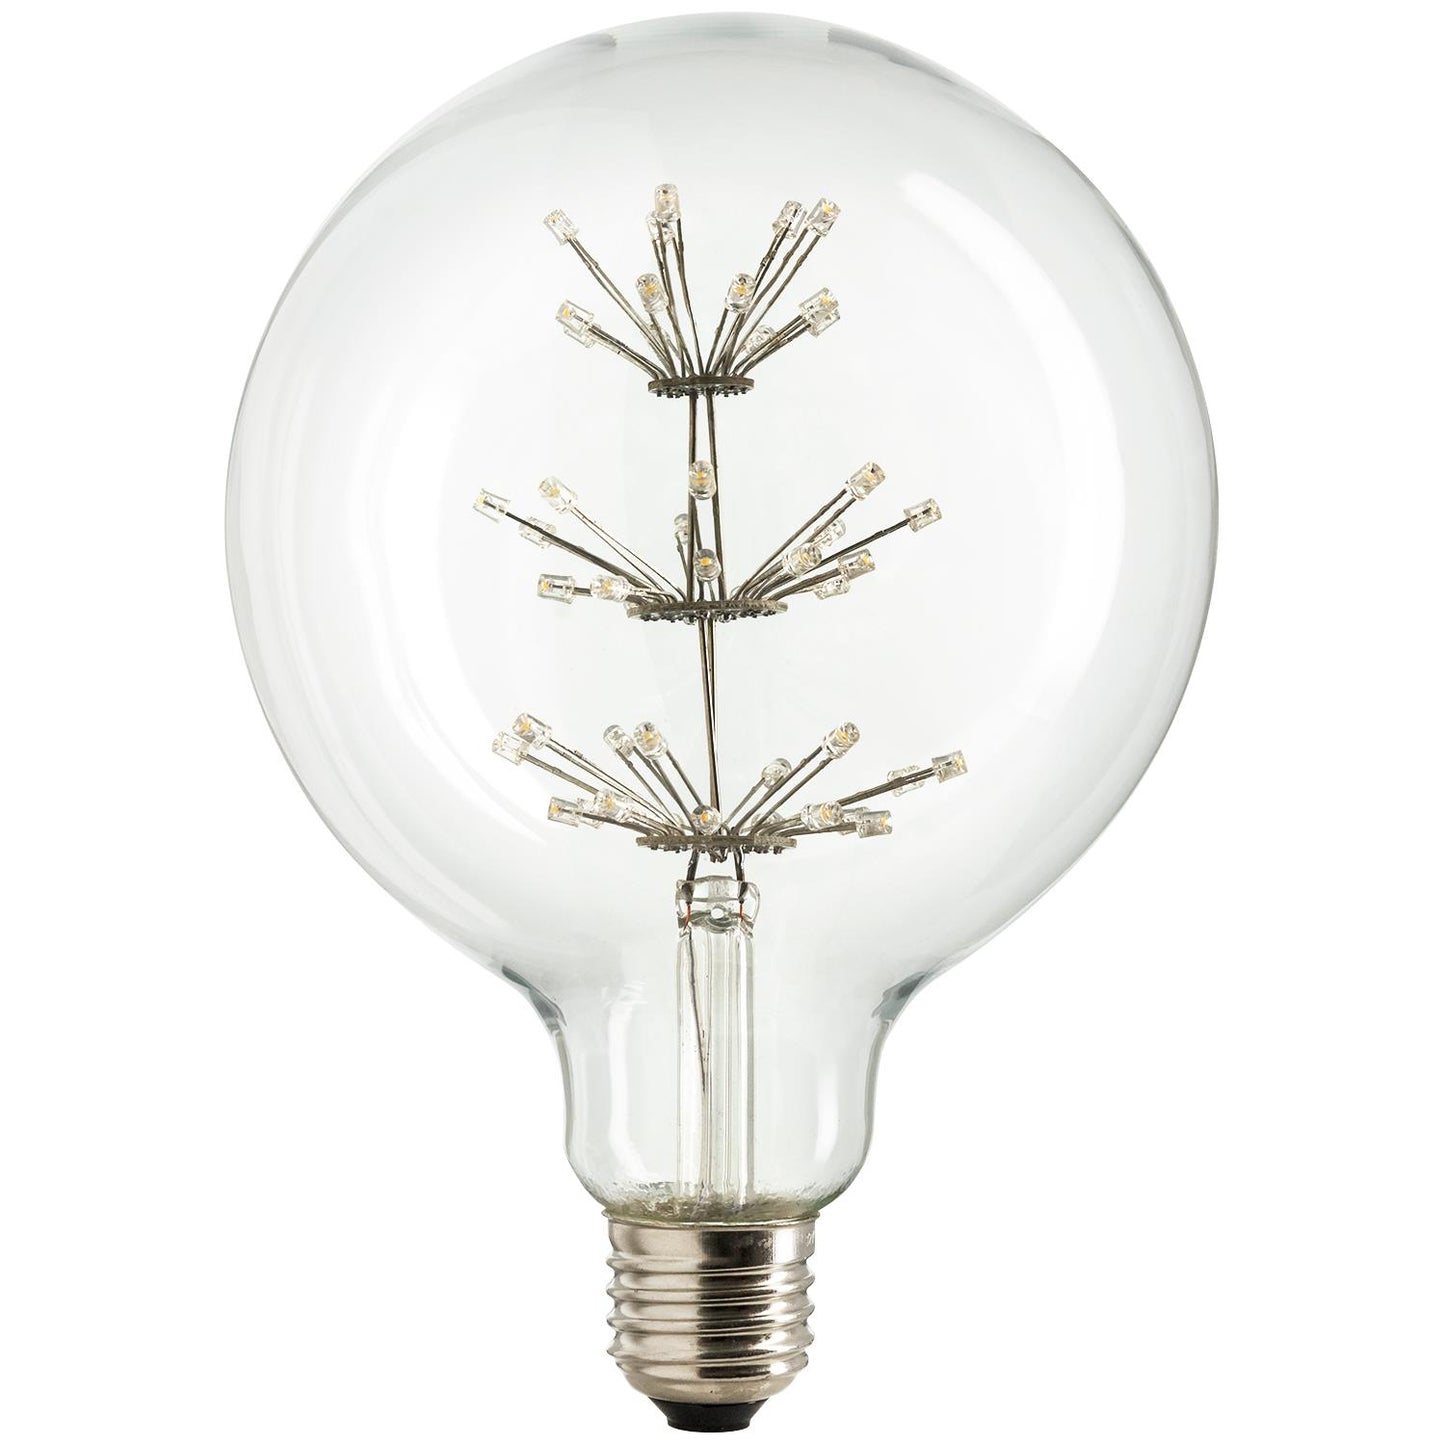 Sunlite LED Vintage Star 1.8W Light Bulb Medium (E26) Base, Warm White